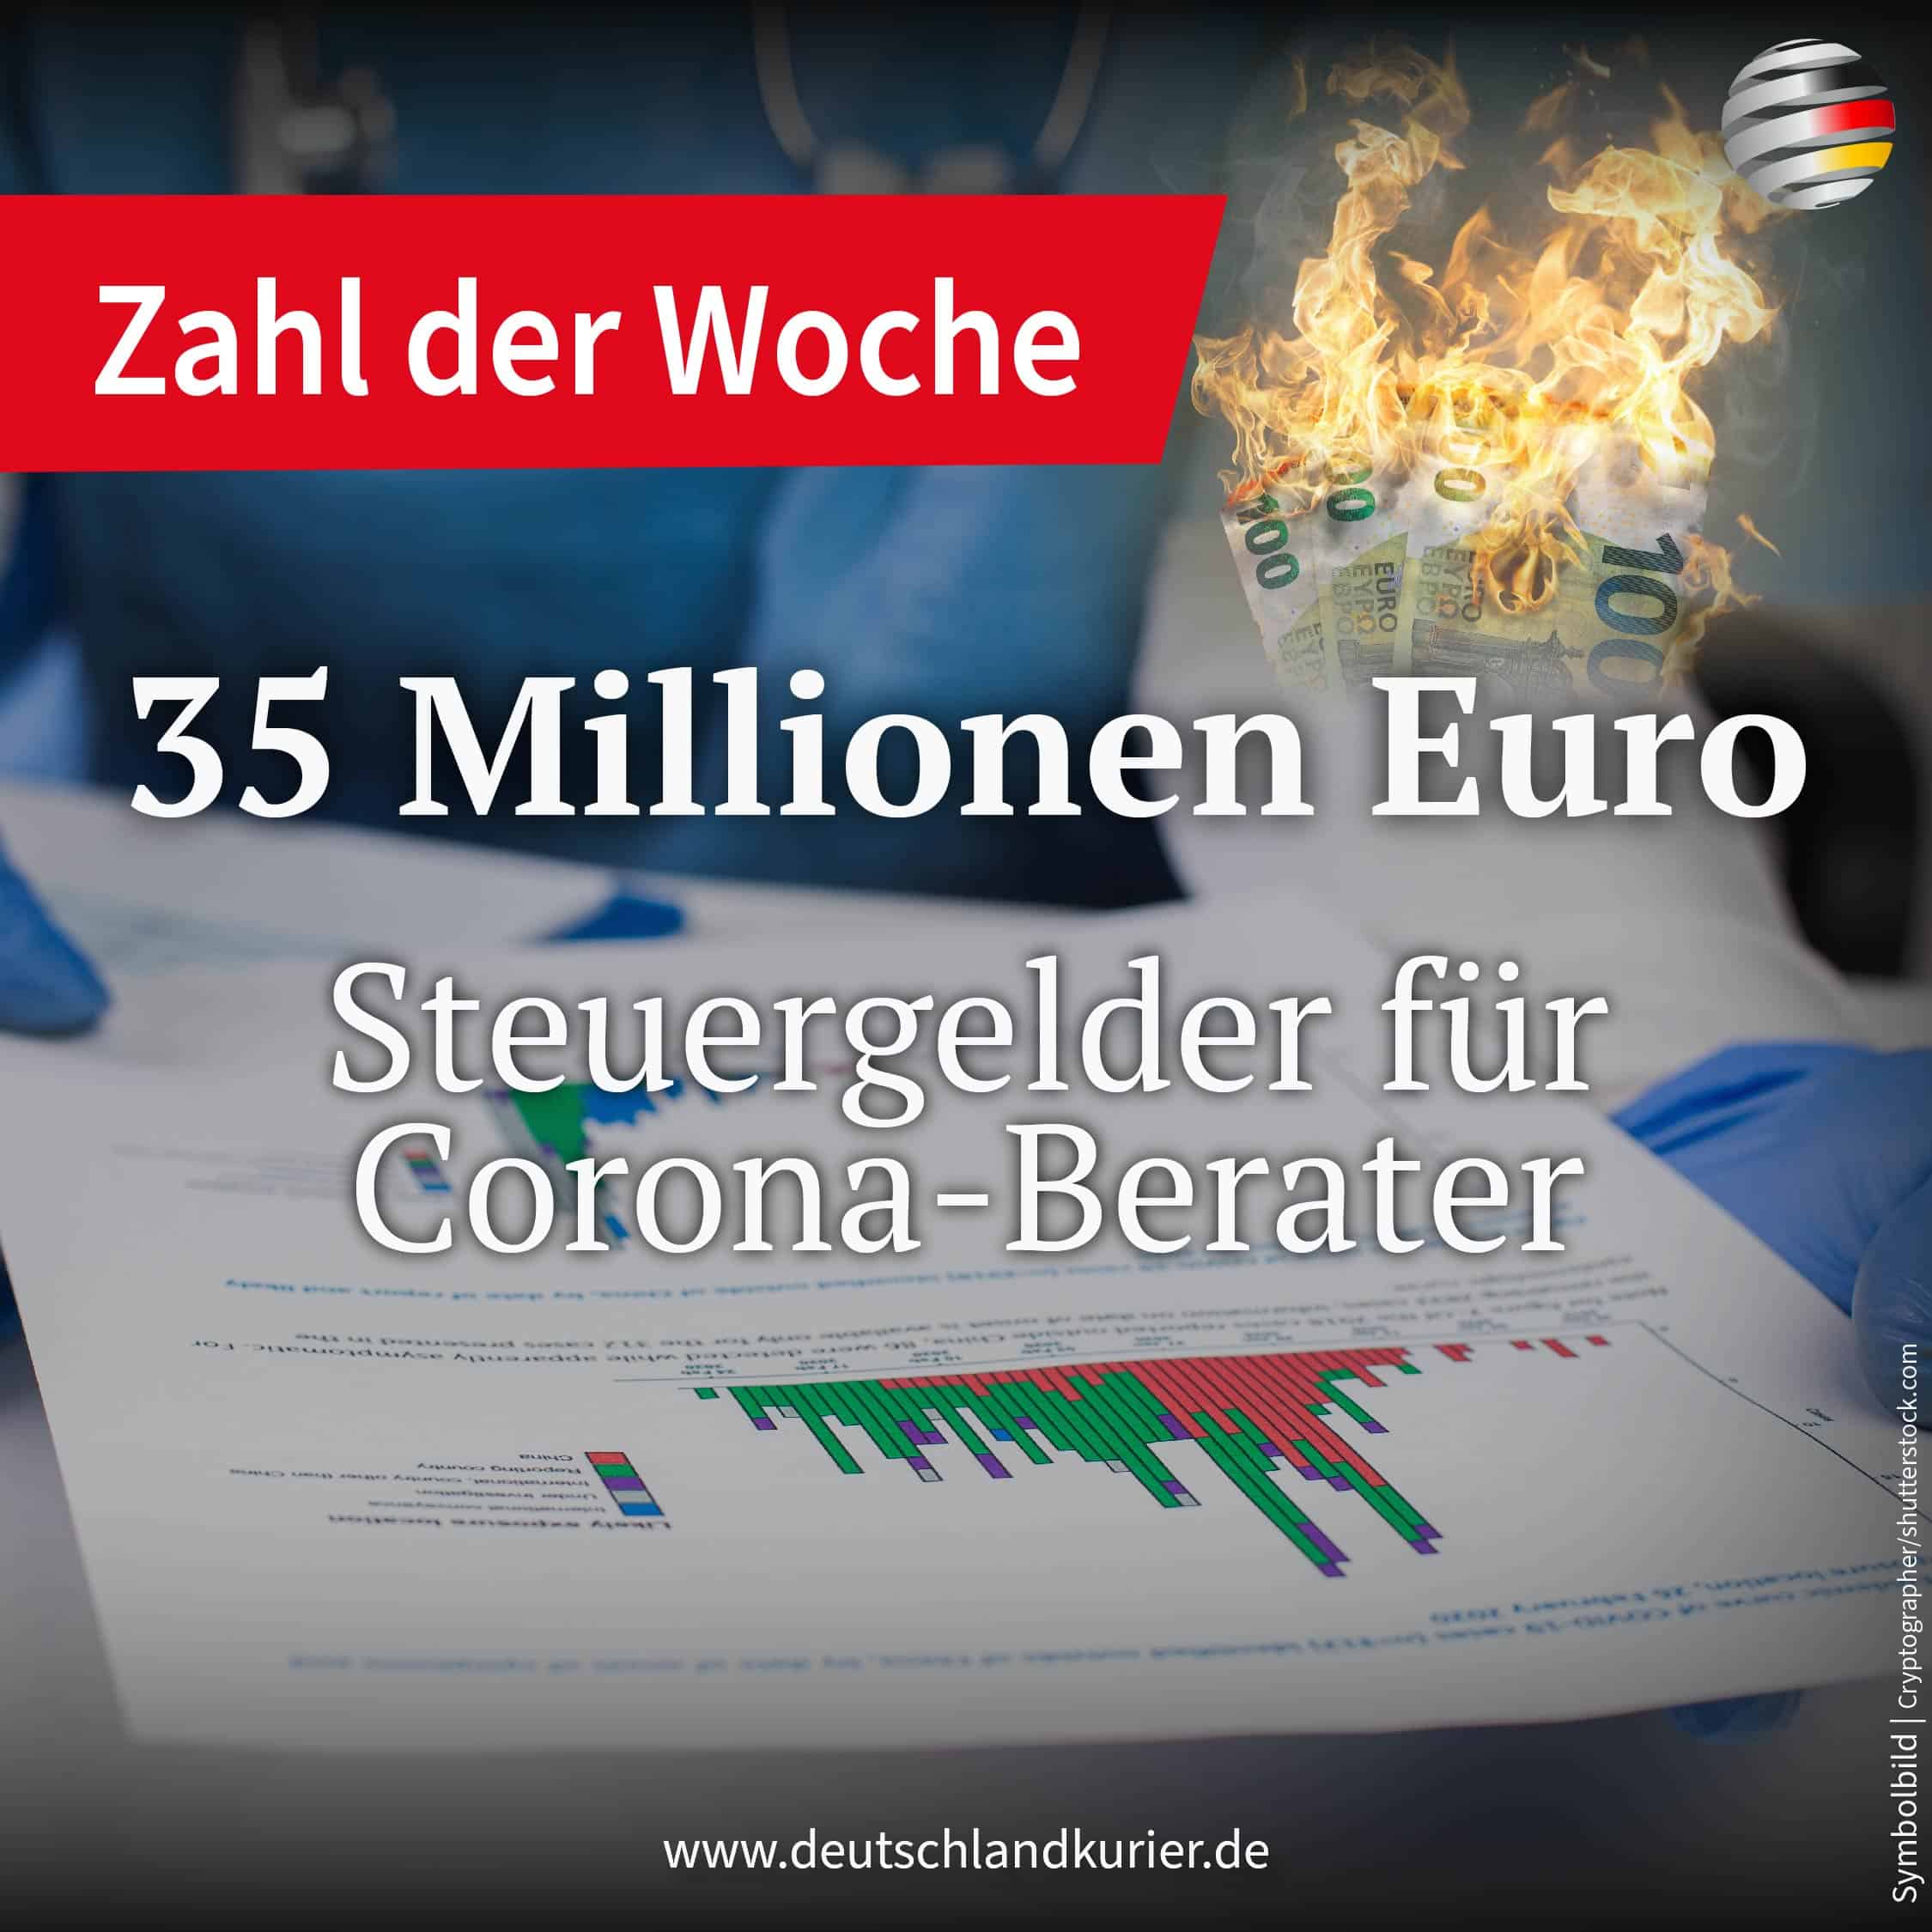 35-millionen-euro-oeffentliche-gelder-fuer-berater-im-zusammenhang-mit-der-corona-pandemie!